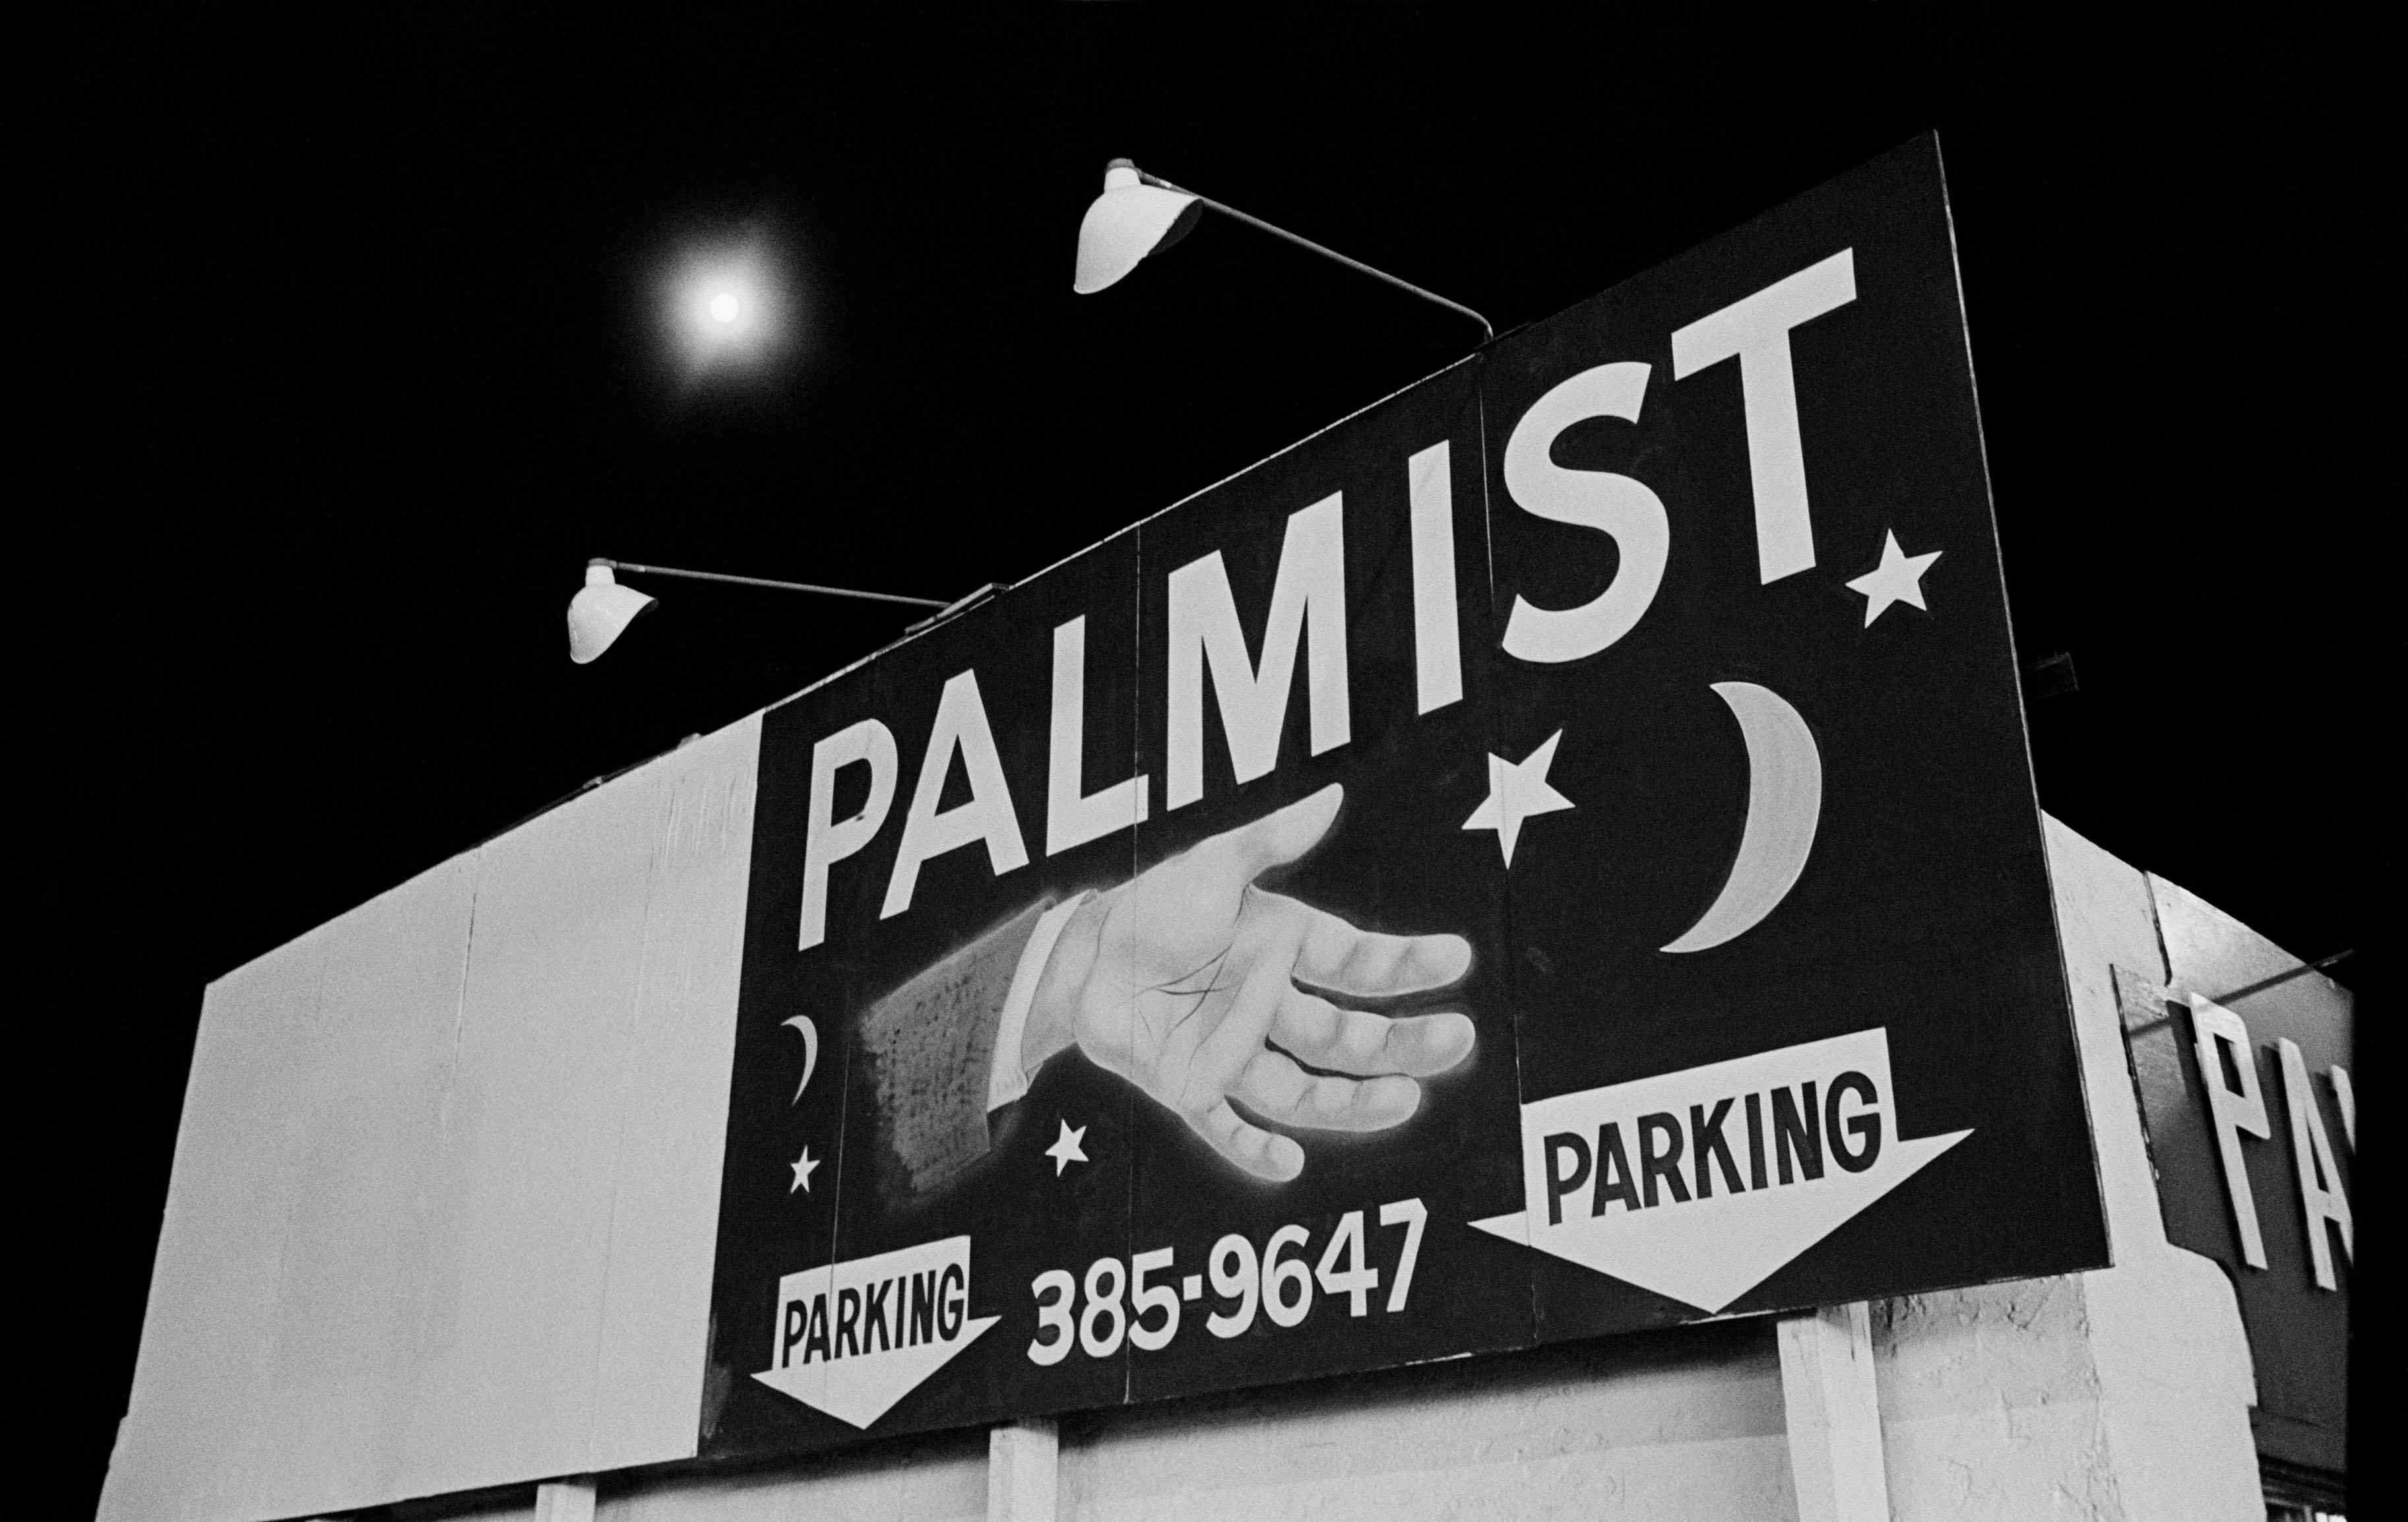 Black and White Photograph Michael Ormerod - The Palmist - Photographie de rue, Amérique, 20e siècle, Robert Frank, surréaliste